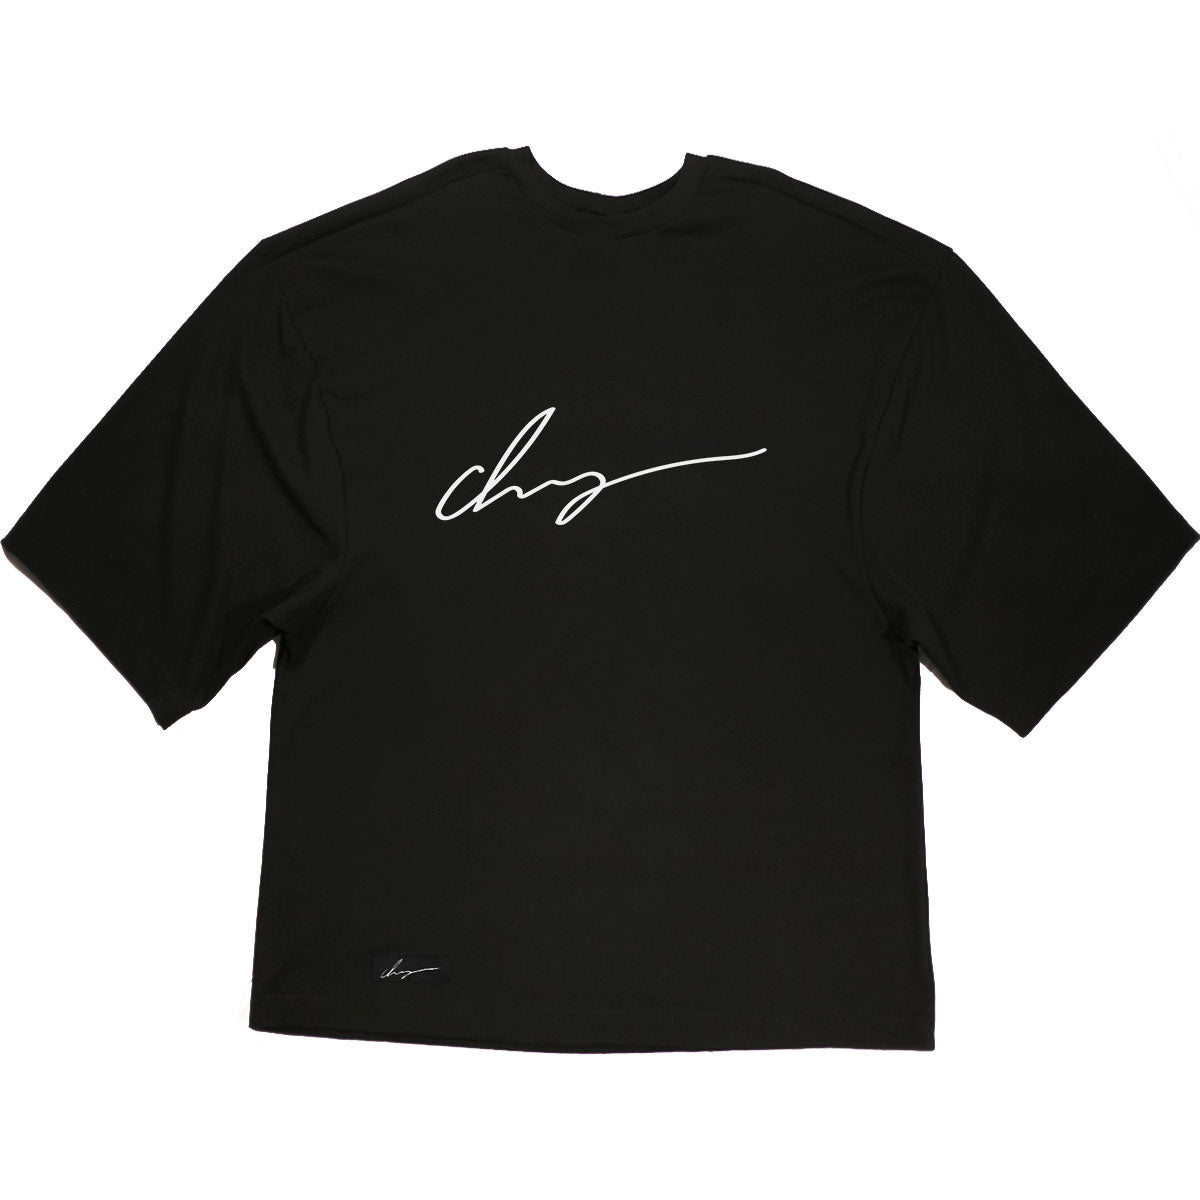 Chaigne Signature shirt